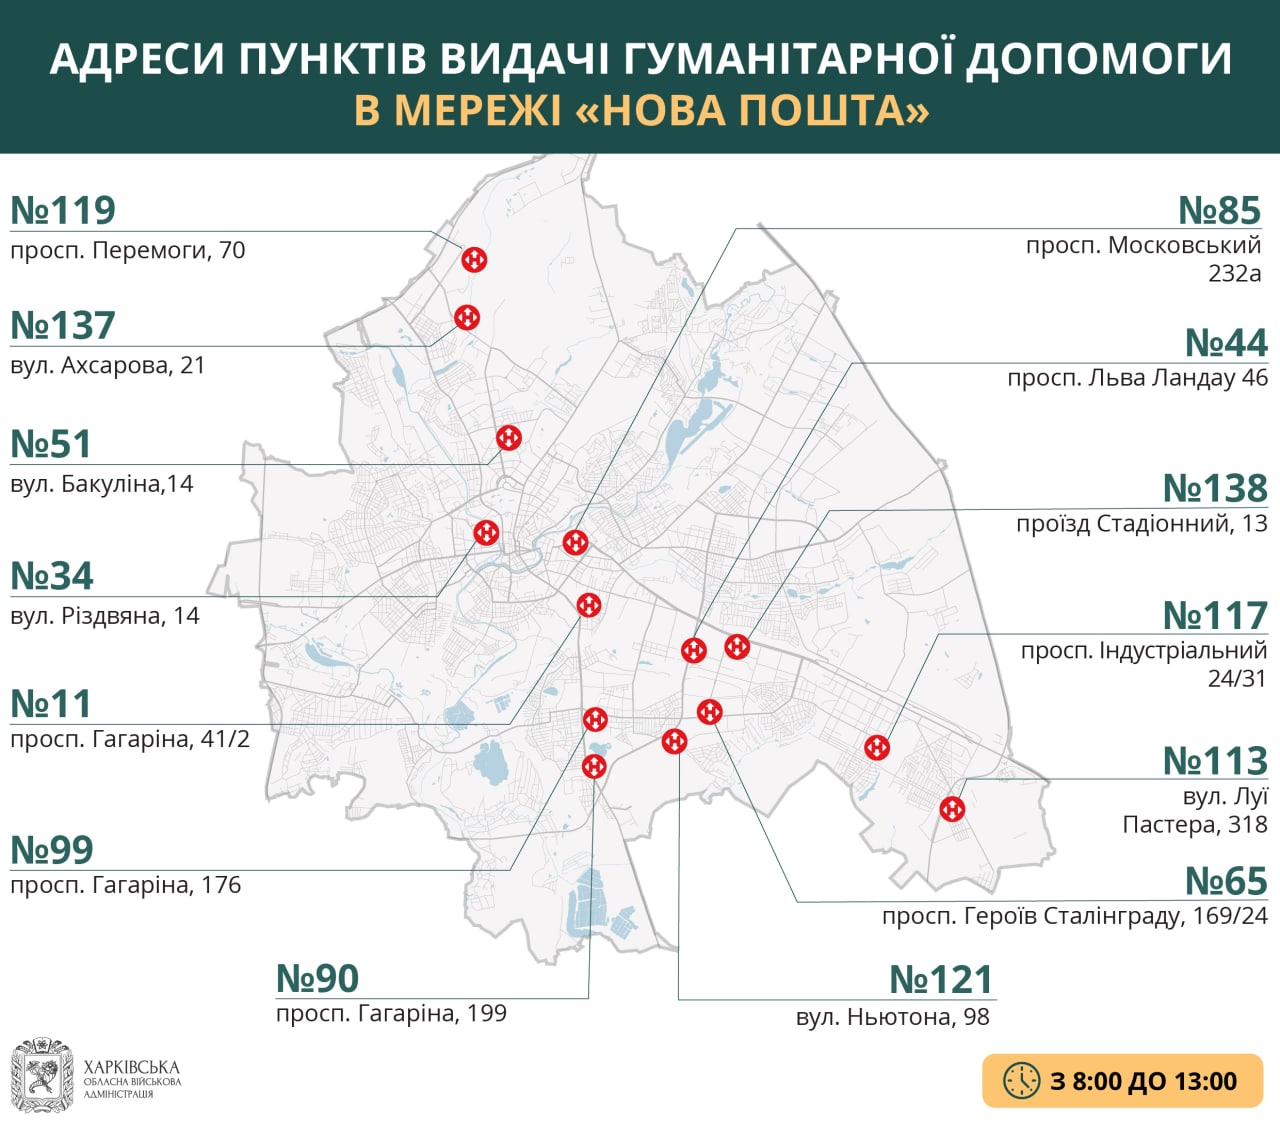 Адреса пунктов выдачи гуманитарной помощи Новой почты 10 мая в Харькове